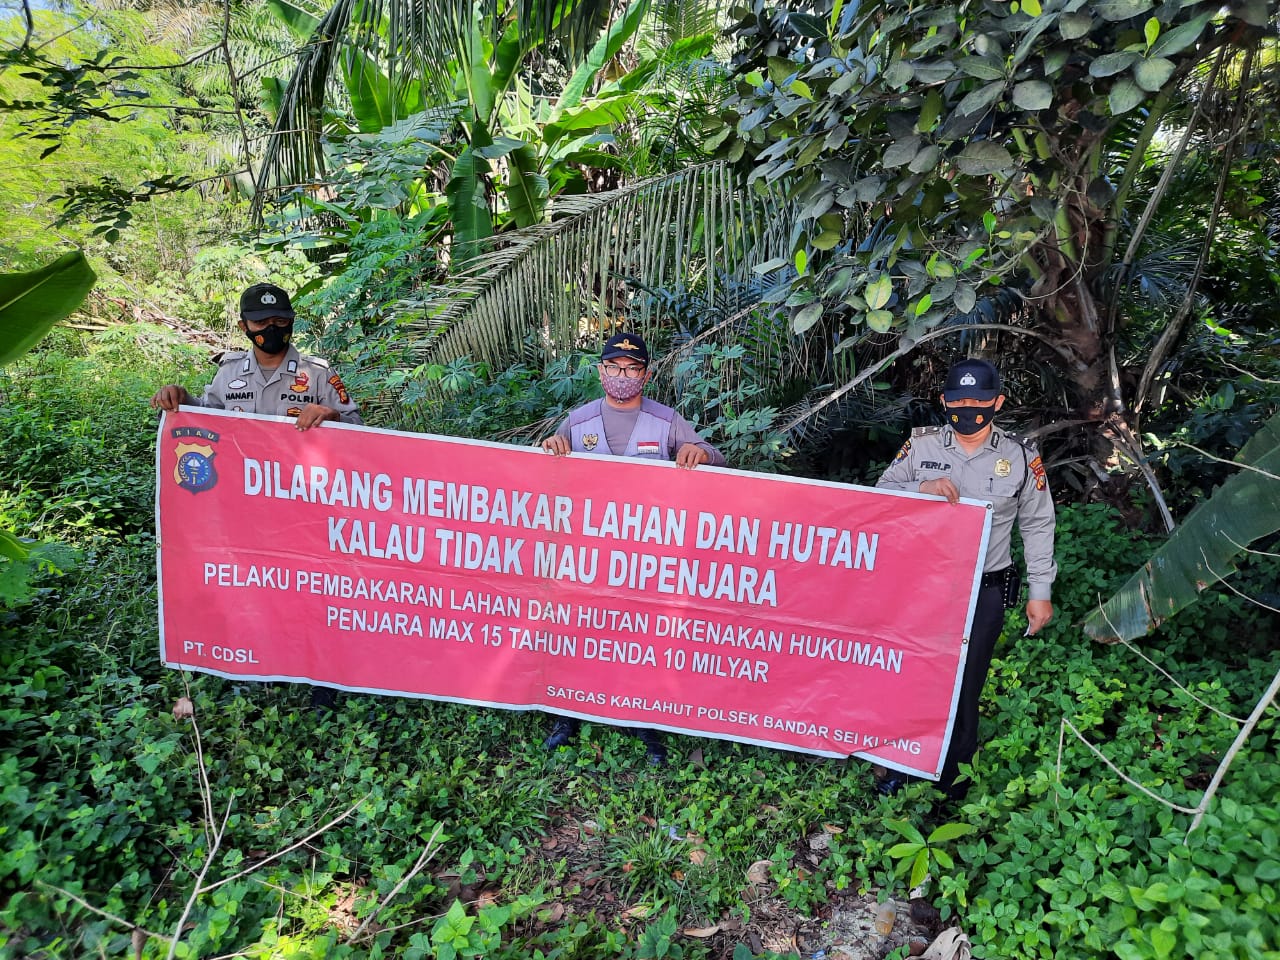 Polsek Bandar Sei Kijang Sosialisasikan Maklumat Kapolda Riau Terkait Karhutla